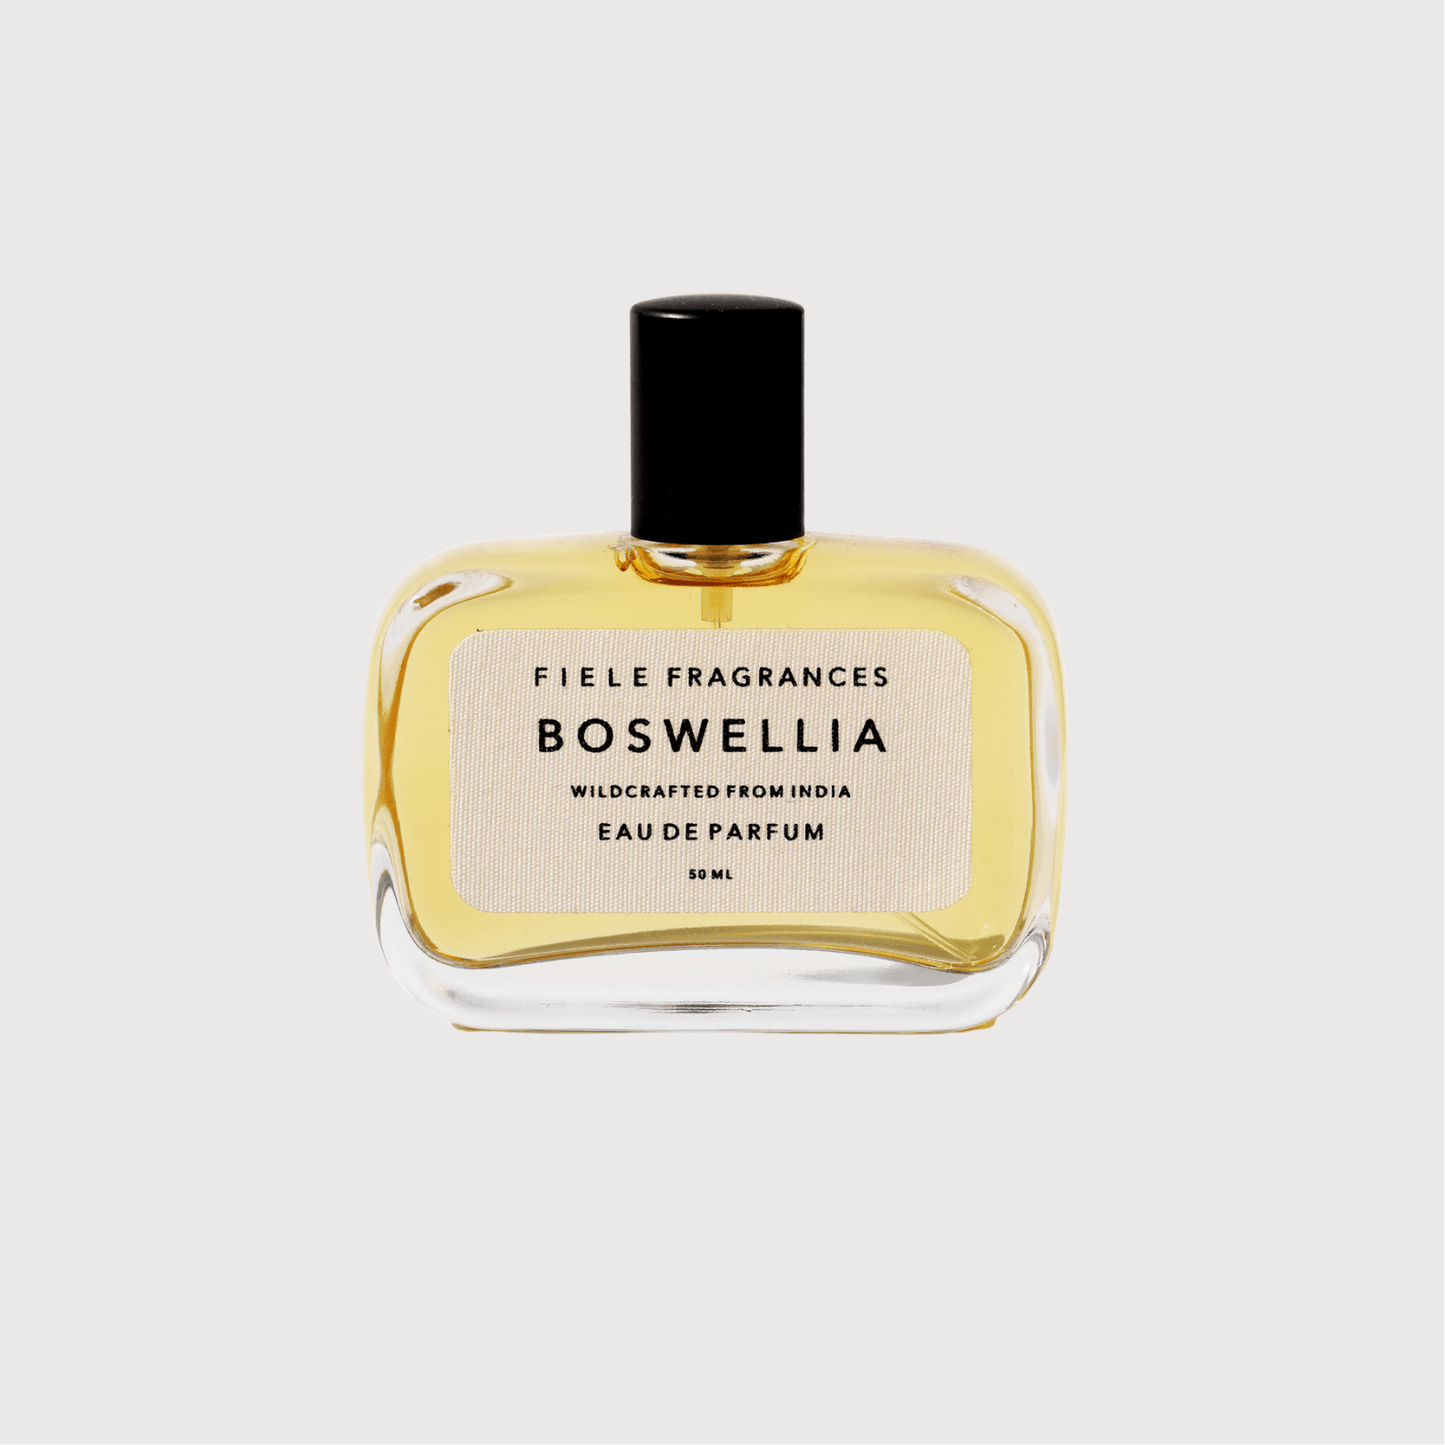 Boswellia eau de parfum by Fiele Fragrances - Haven